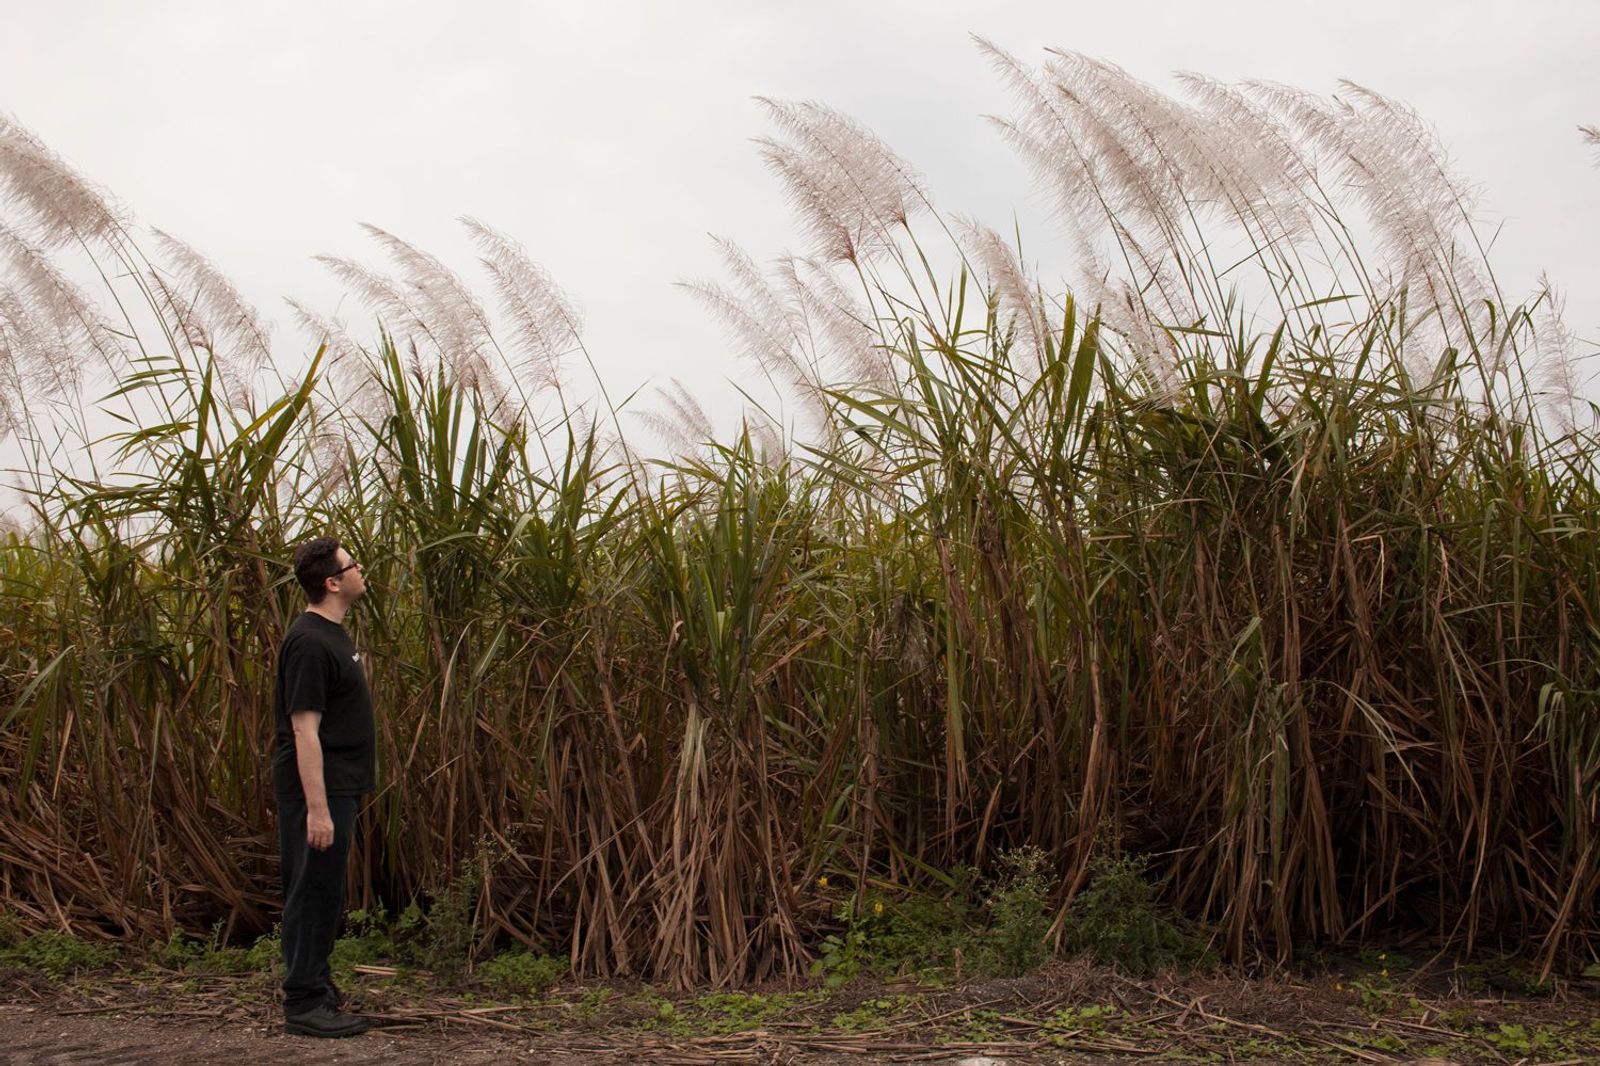 © Sofia Valiente - Ben taking a walk around the sugarcane fields that surround Miracle Village.